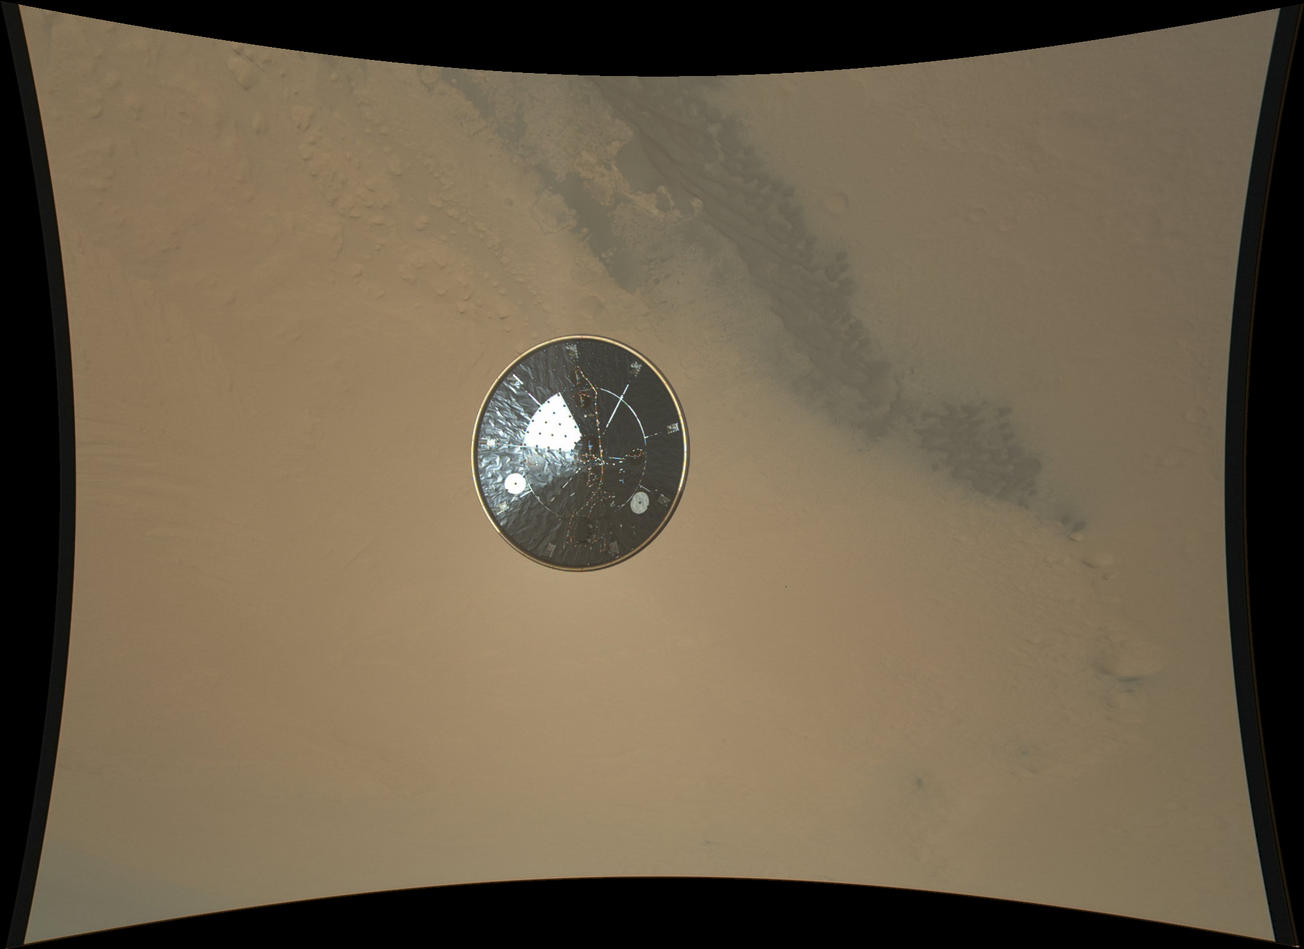 Curiosity's Heat Shield in Detail